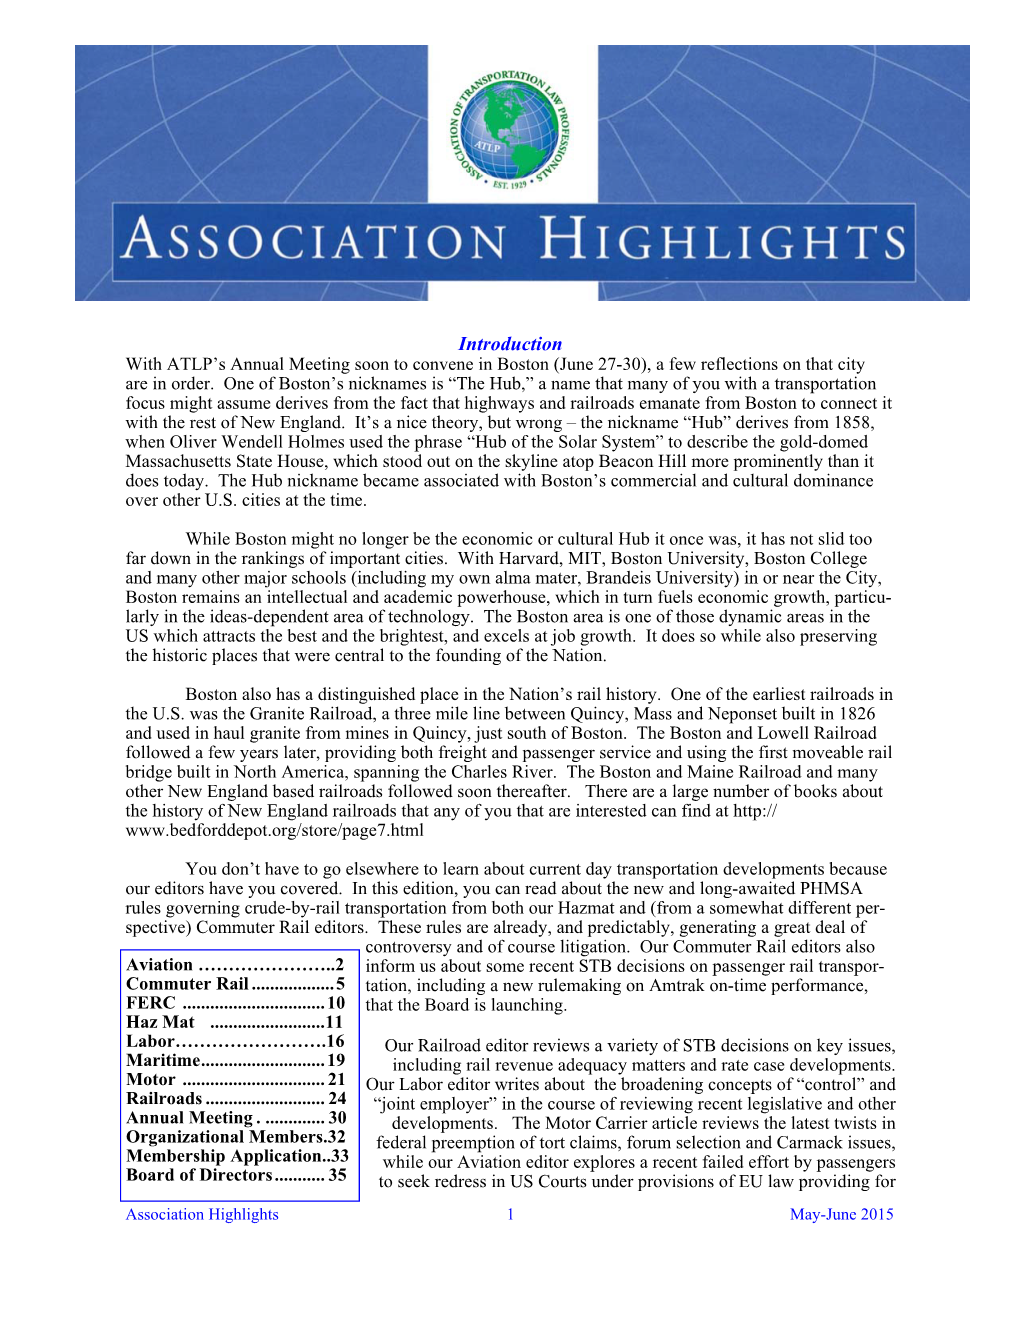 ATLP Association Highlights May-June 2015.Pub